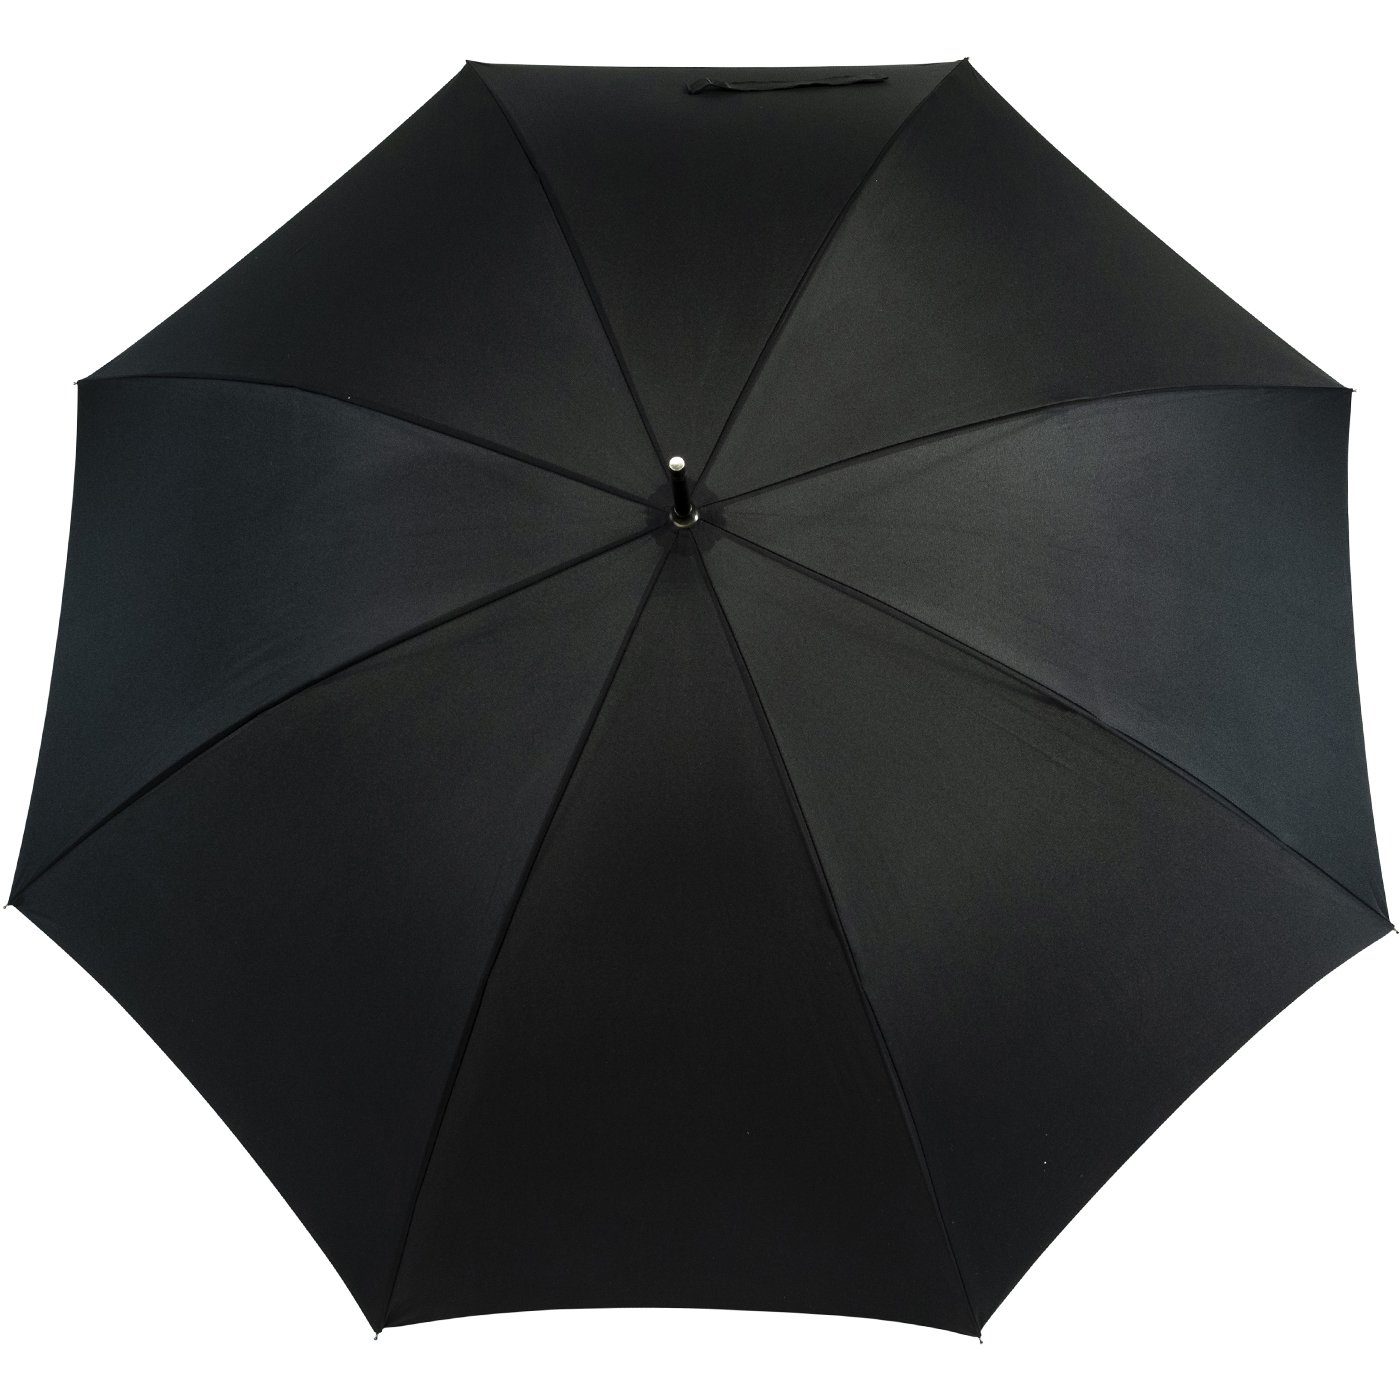 und stabil, Golfschirm, - Langregenschirm für uni-Sommerfarben Damen XXL und schwarz Partnerschirm Herren, doppler® groß